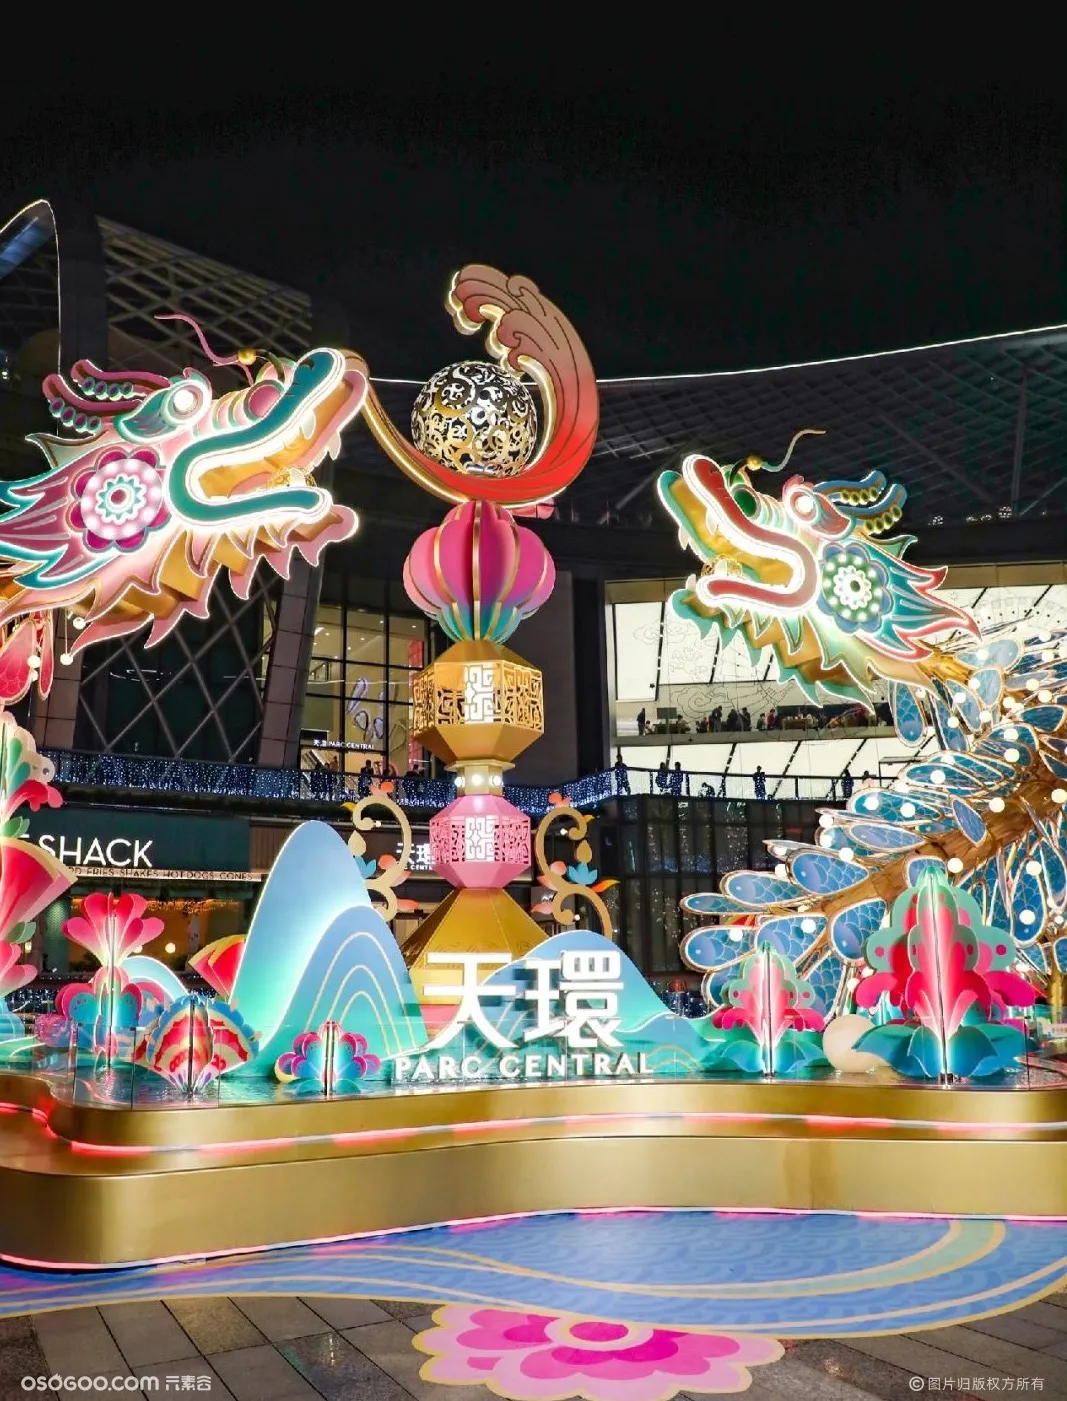 广州天环广场「鱼跃龙腾」新年装置